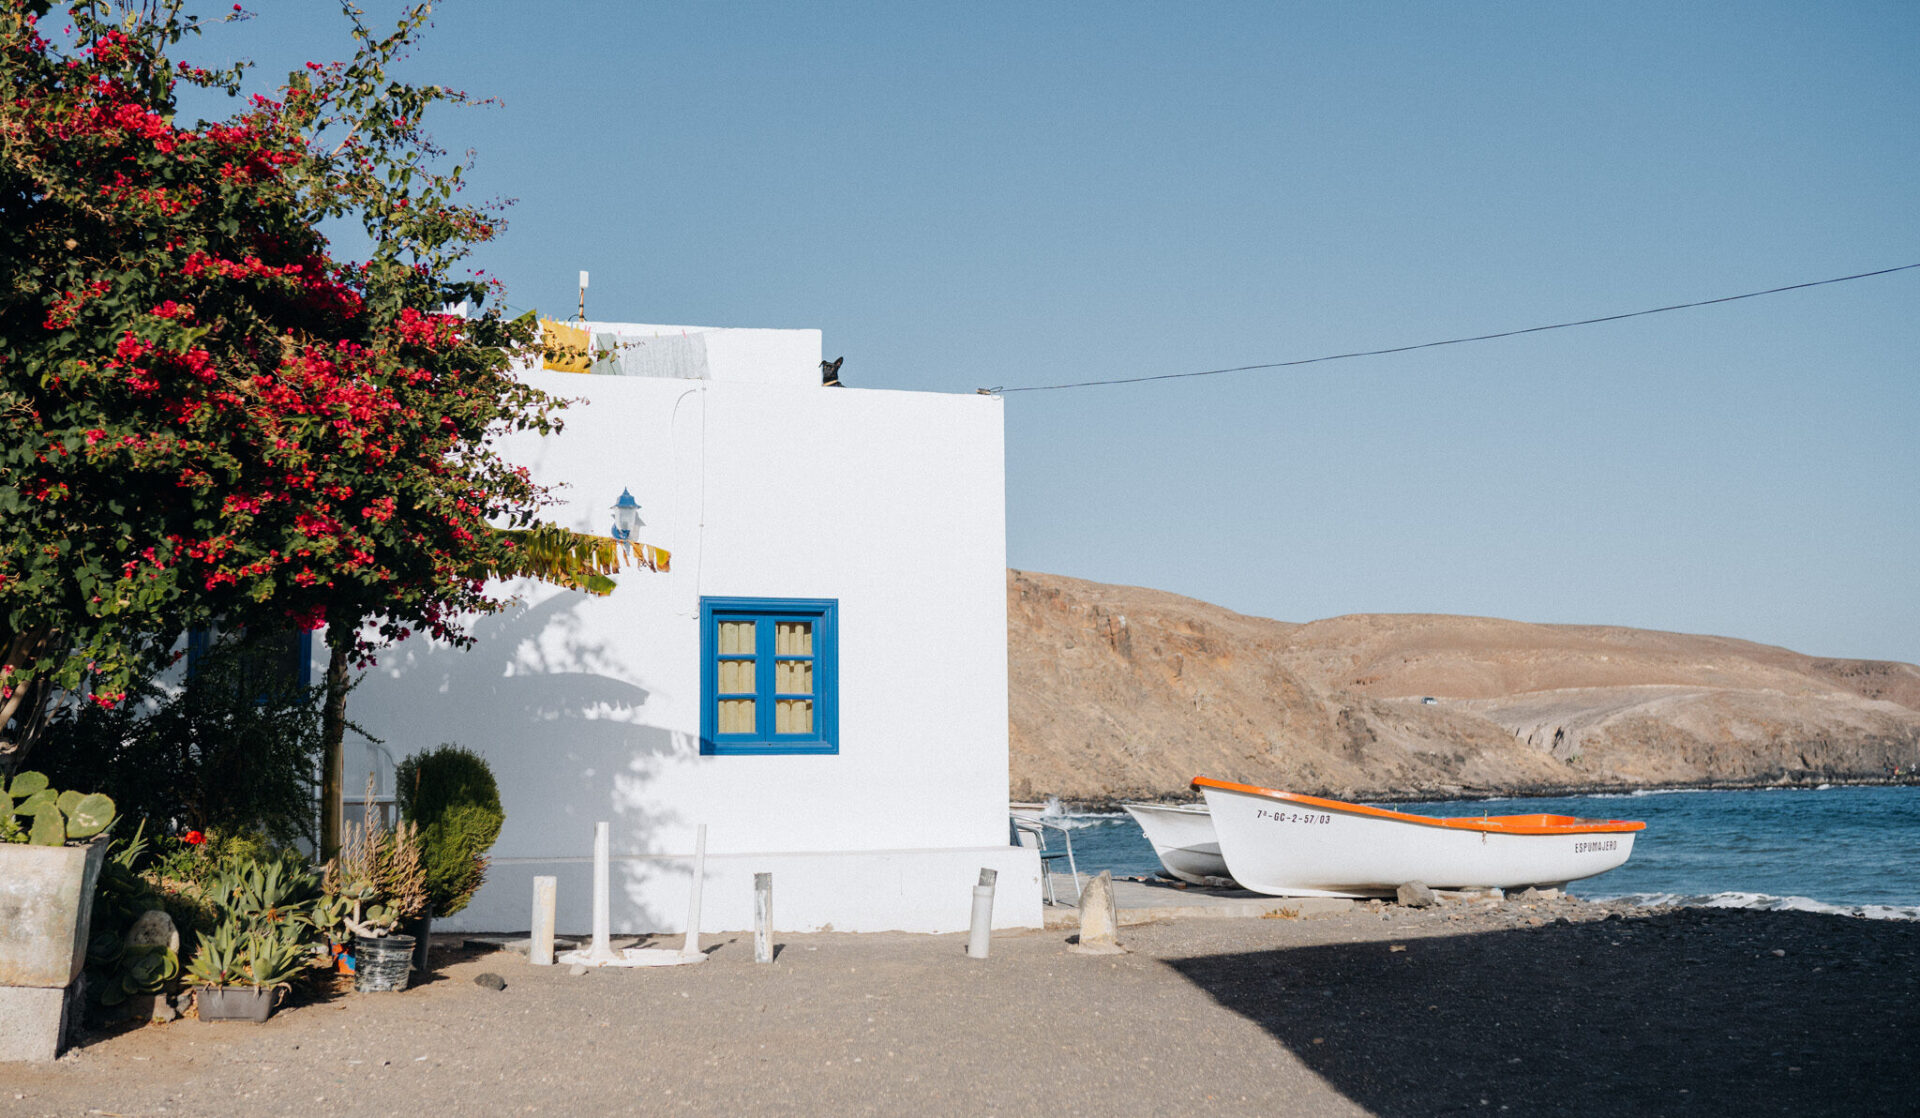 Reisetipps für Fuerteventura ist der Ort Pozo Negro